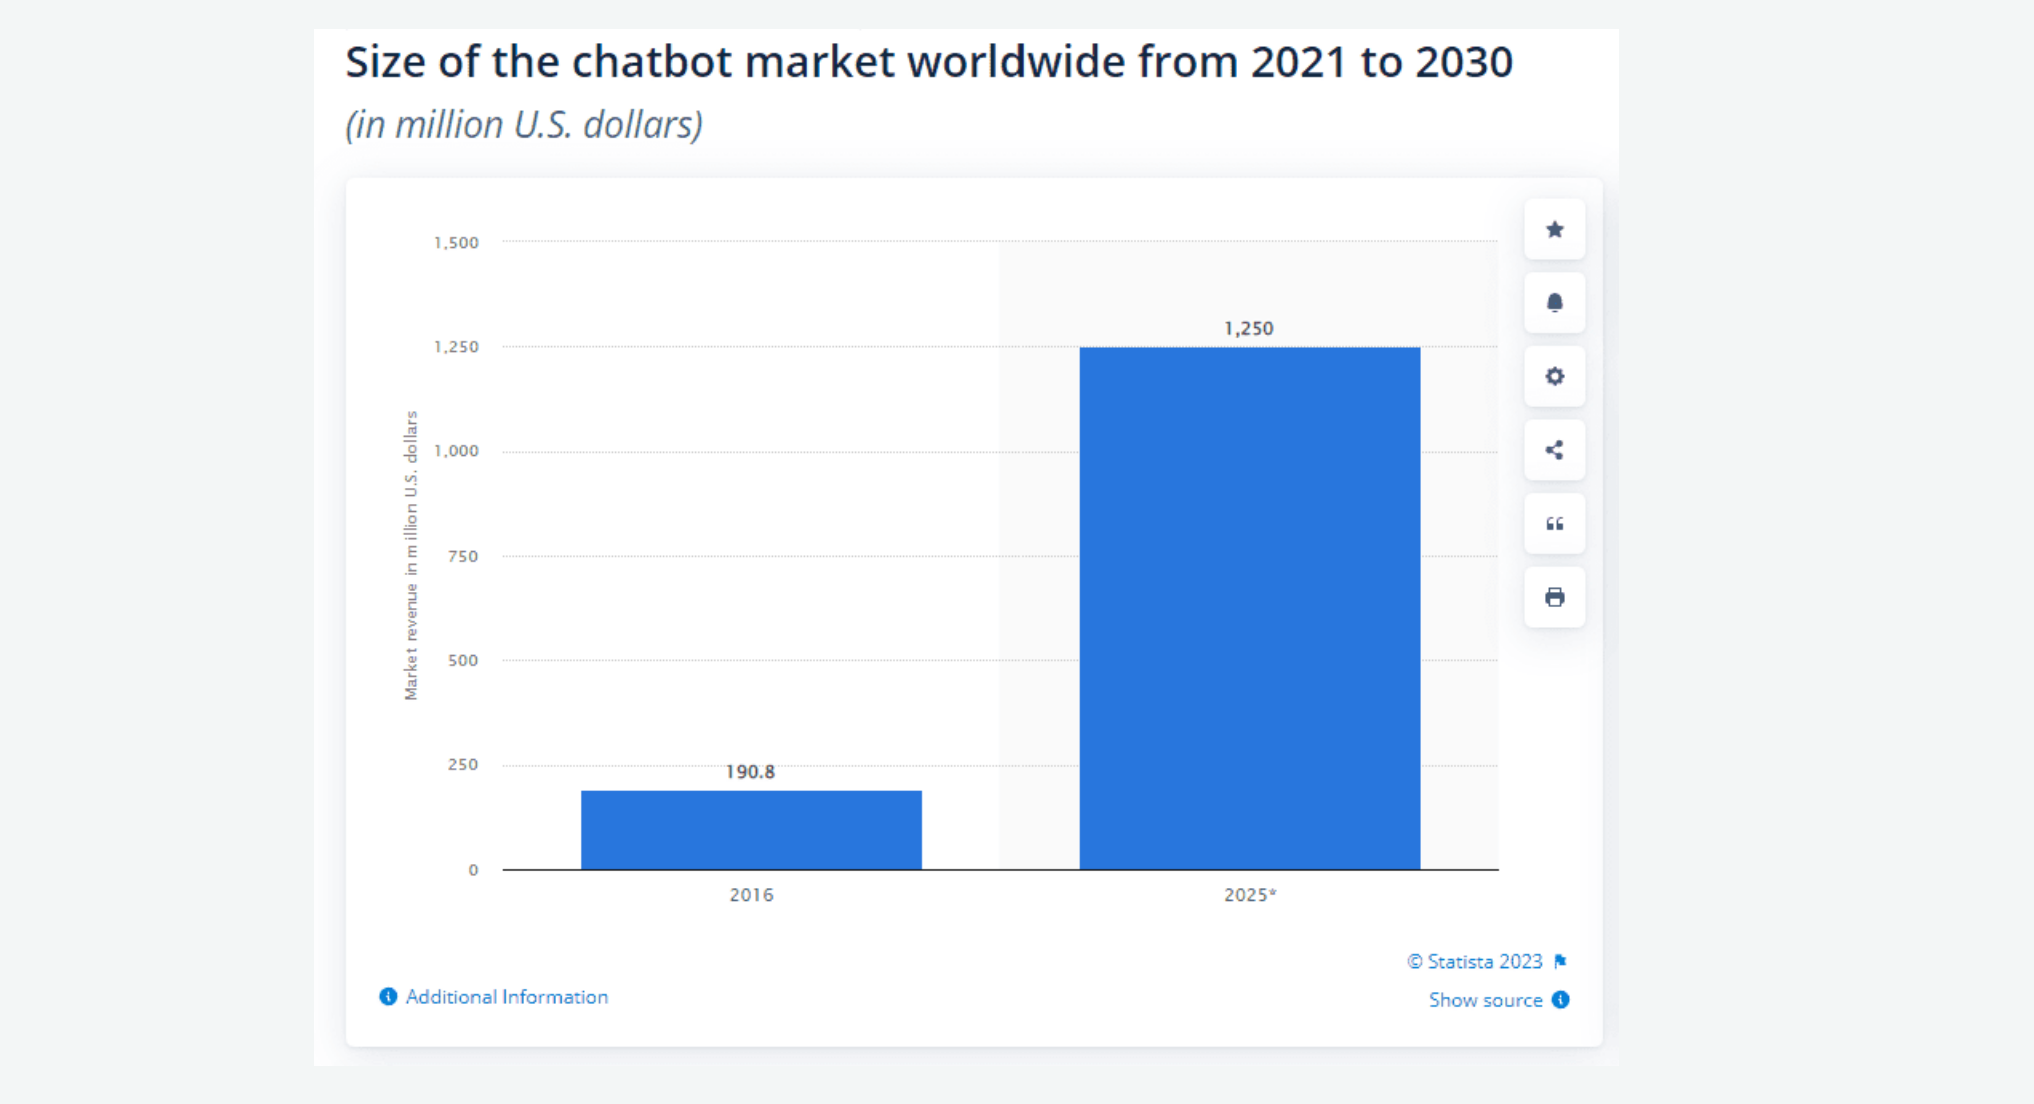 Grootte van de chatbotmarkt